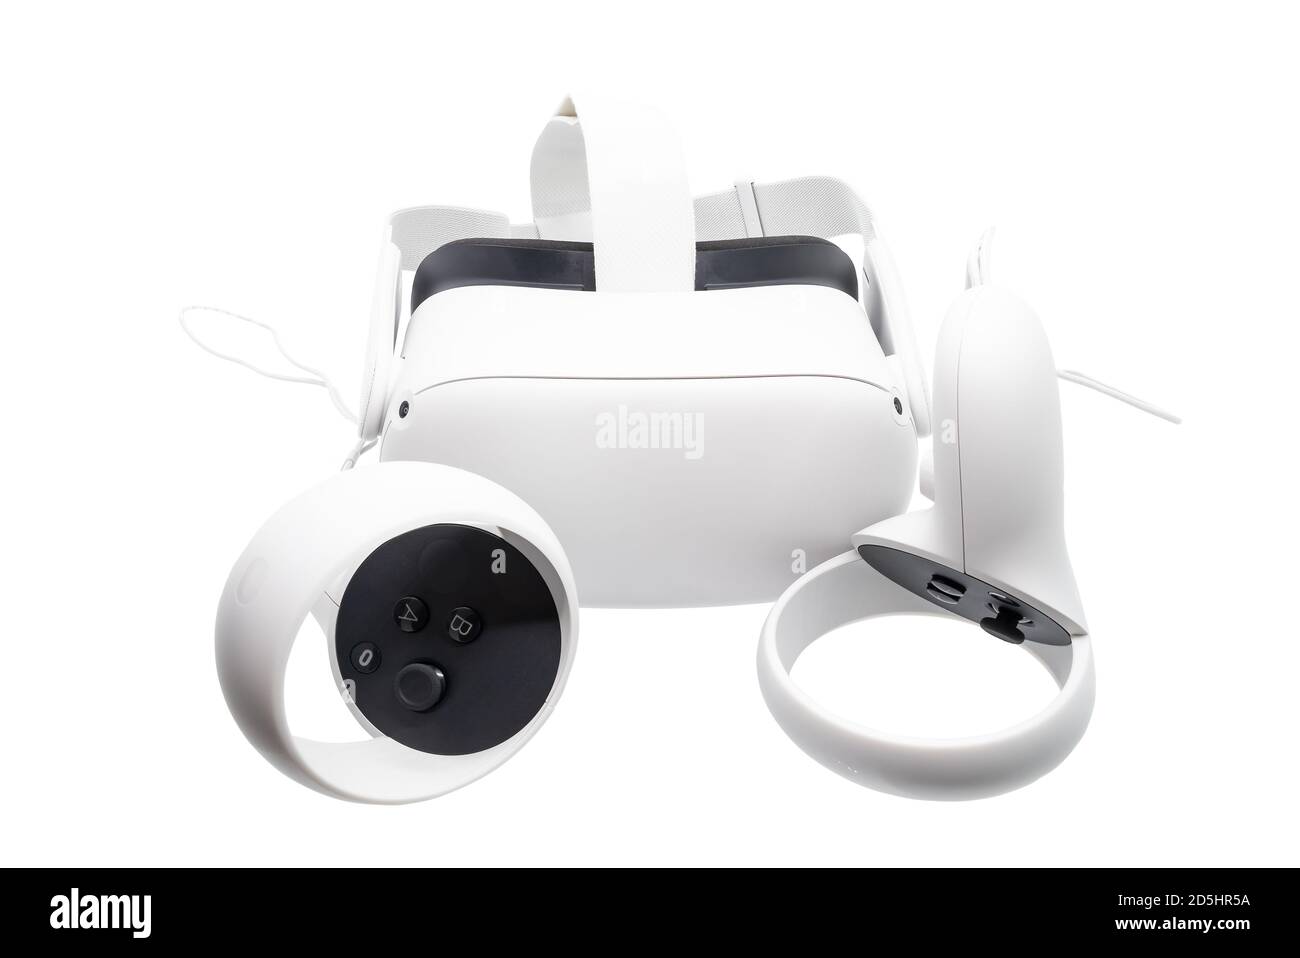 Huelva, Espagne - 13 octobre 2020: Oculus Quest 2, la prochaine génération de VR tout-en-un. Avec un format tout-en-un repensé, le nouveau contrôle tactile Banque D'Images